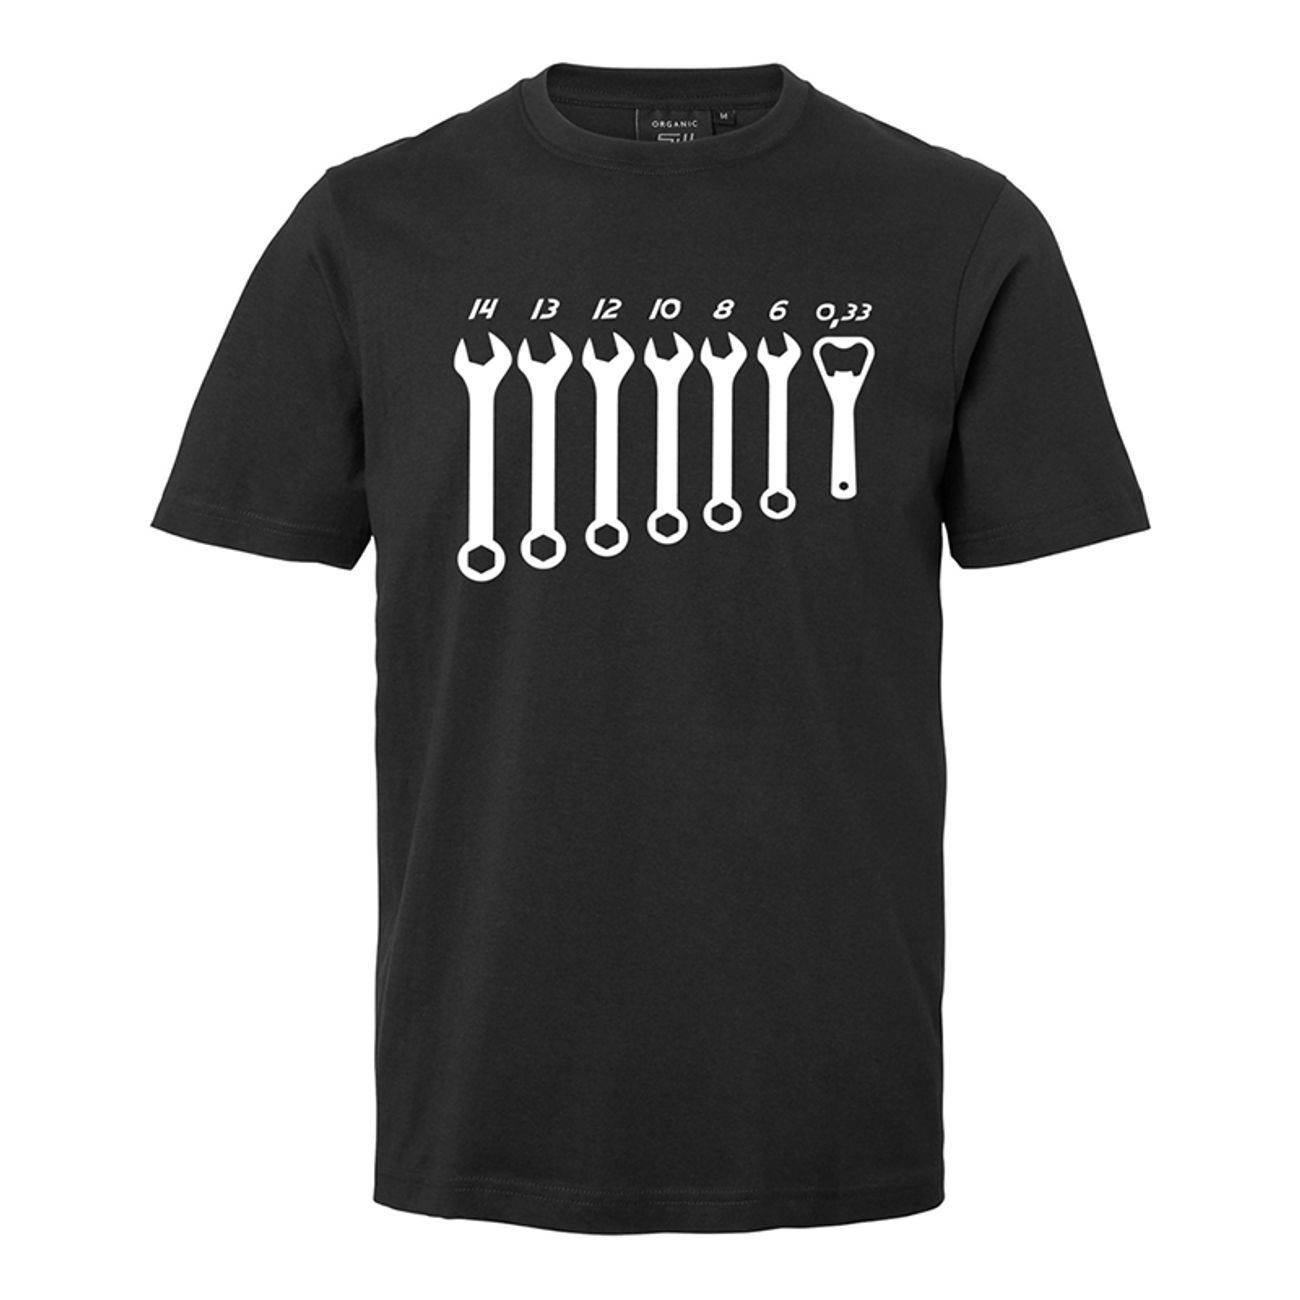 verktyg-t-shirt-74624-1